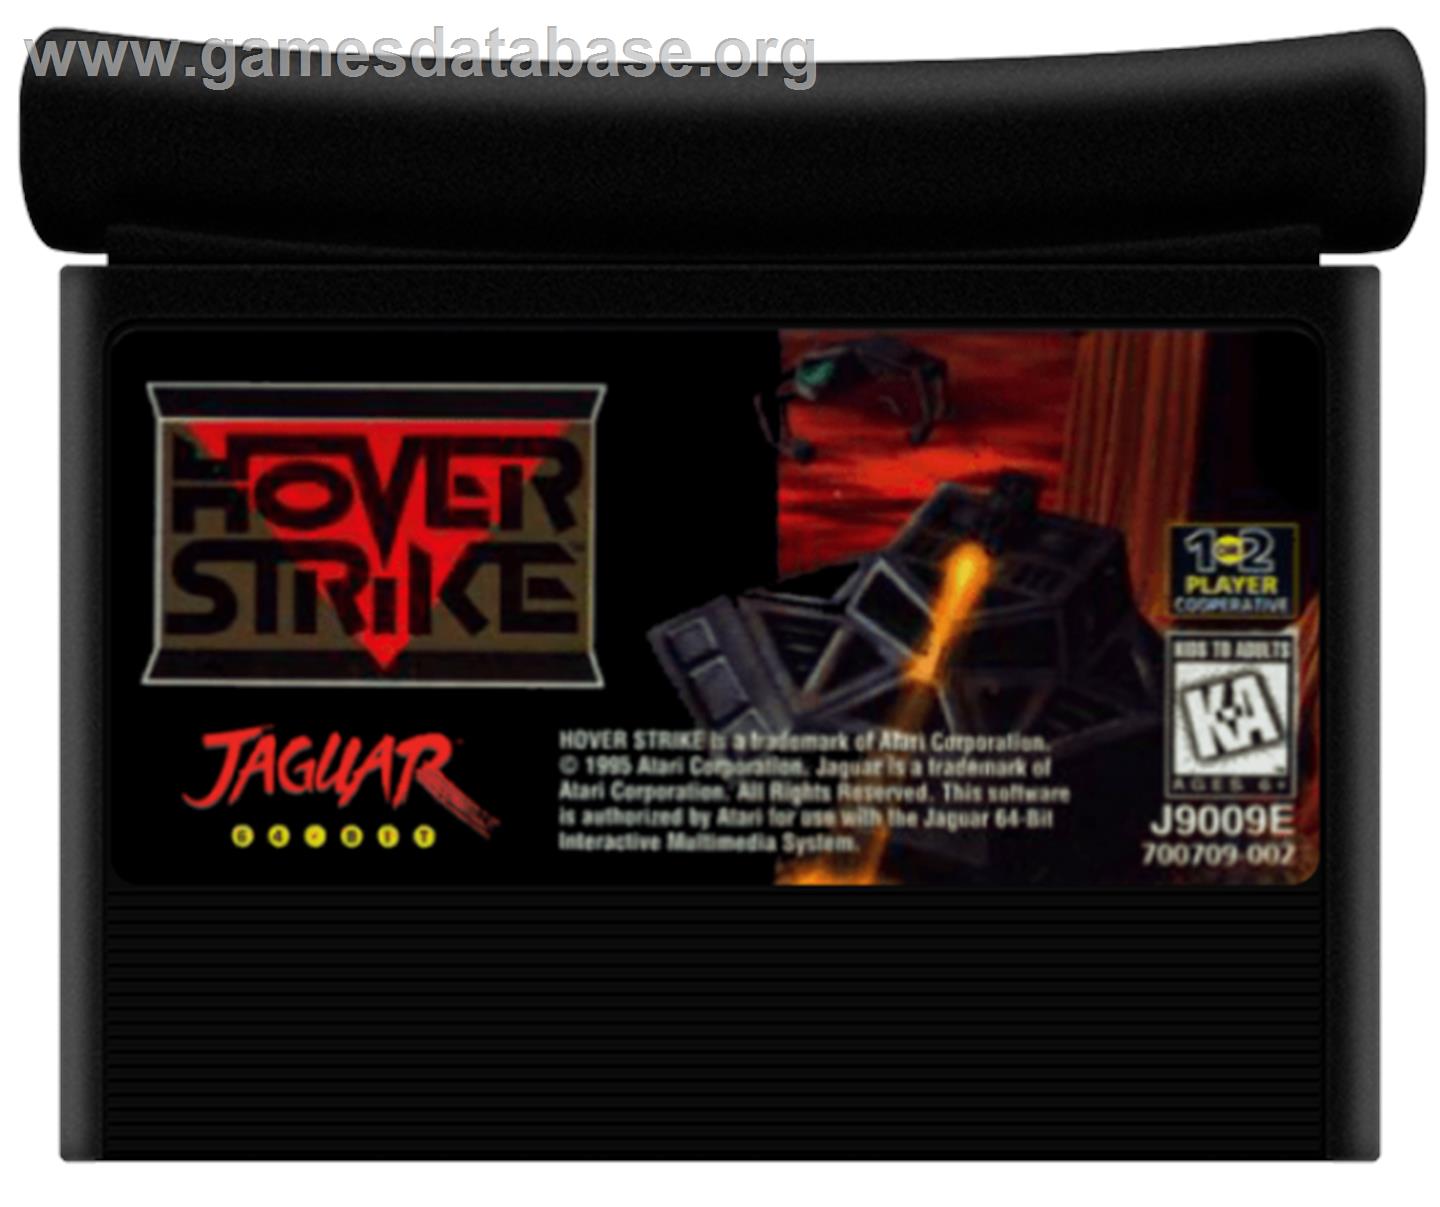 Hover Strike - Atari Jaguar - Artwork - Cartridge